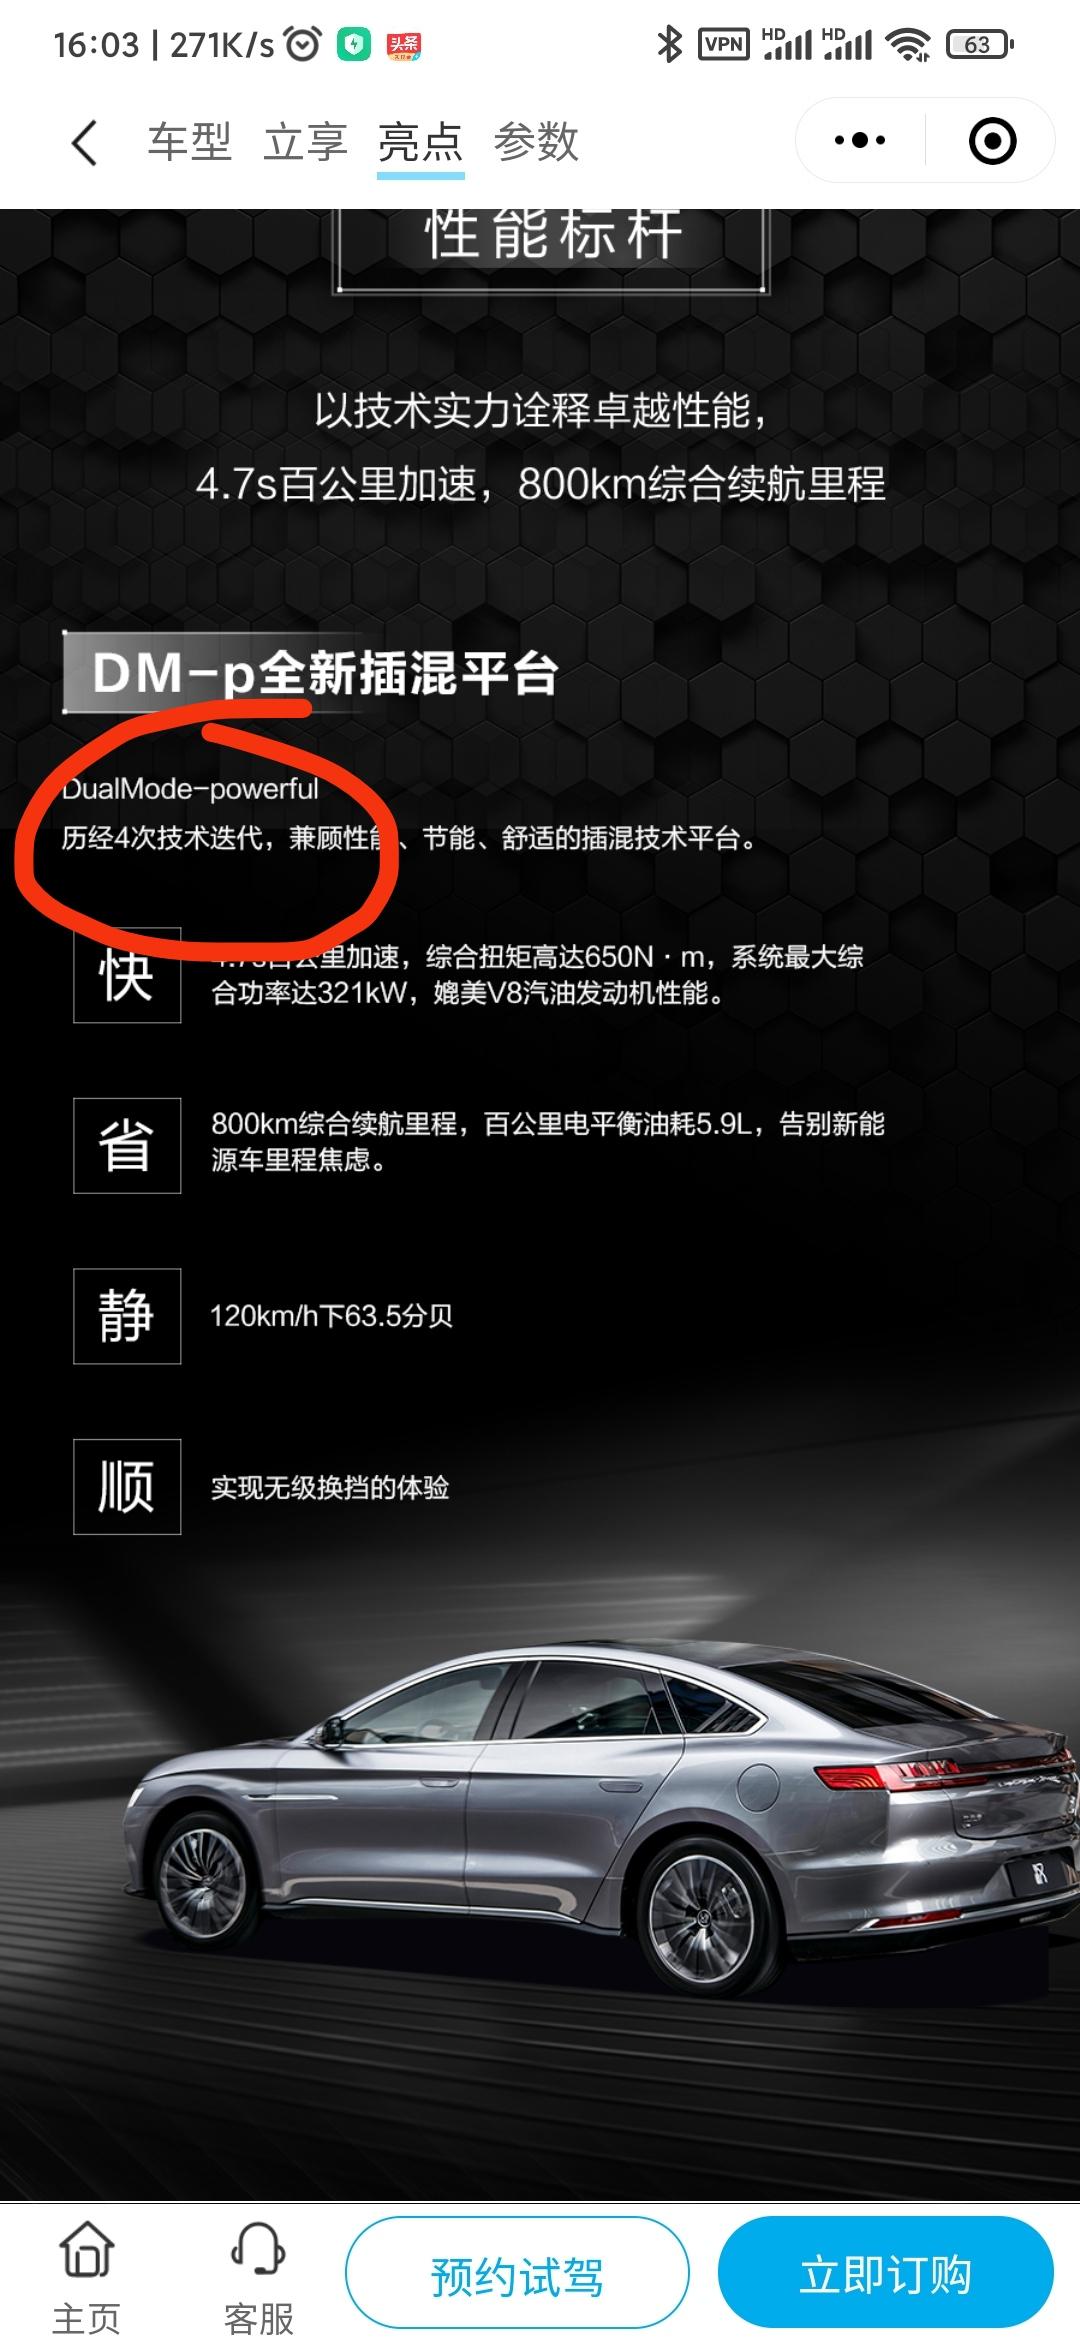 请问目前(2021.10)汉DM是跟dmi同样的第四代的dmp？不是说跟dmi同代的dmp还没发布吗？汉dmi都还没有，